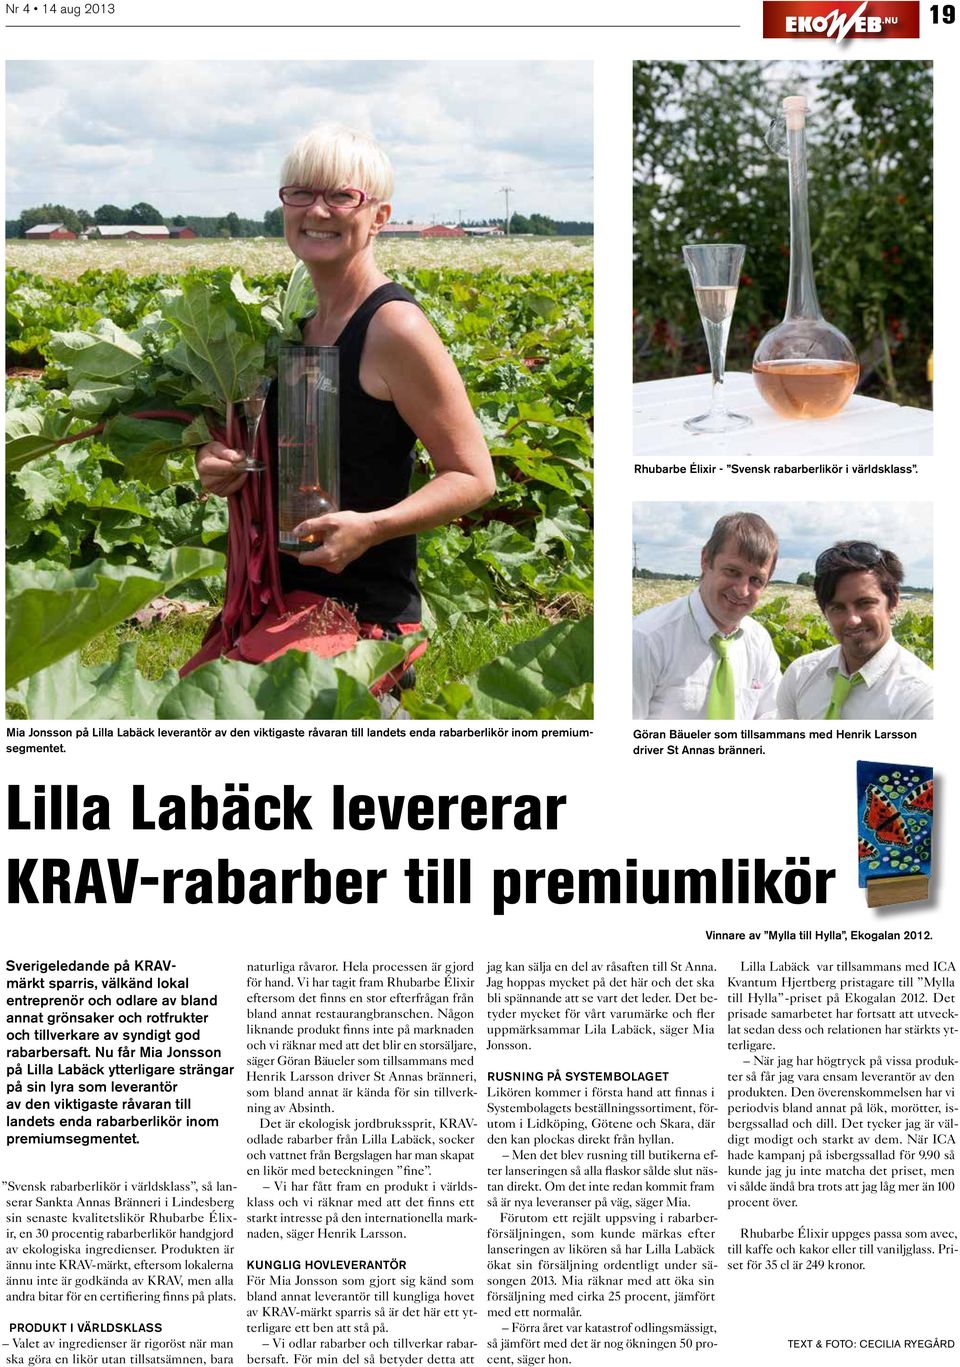 Lilla Labäck levererar krav-rabarber till premiumlikör Sverigeledande på KRAVmärkt sparris, välkänd lokal entreprenör och odlare av bland annat grönsaker och rotfrukter och tillverkare av syndigt god